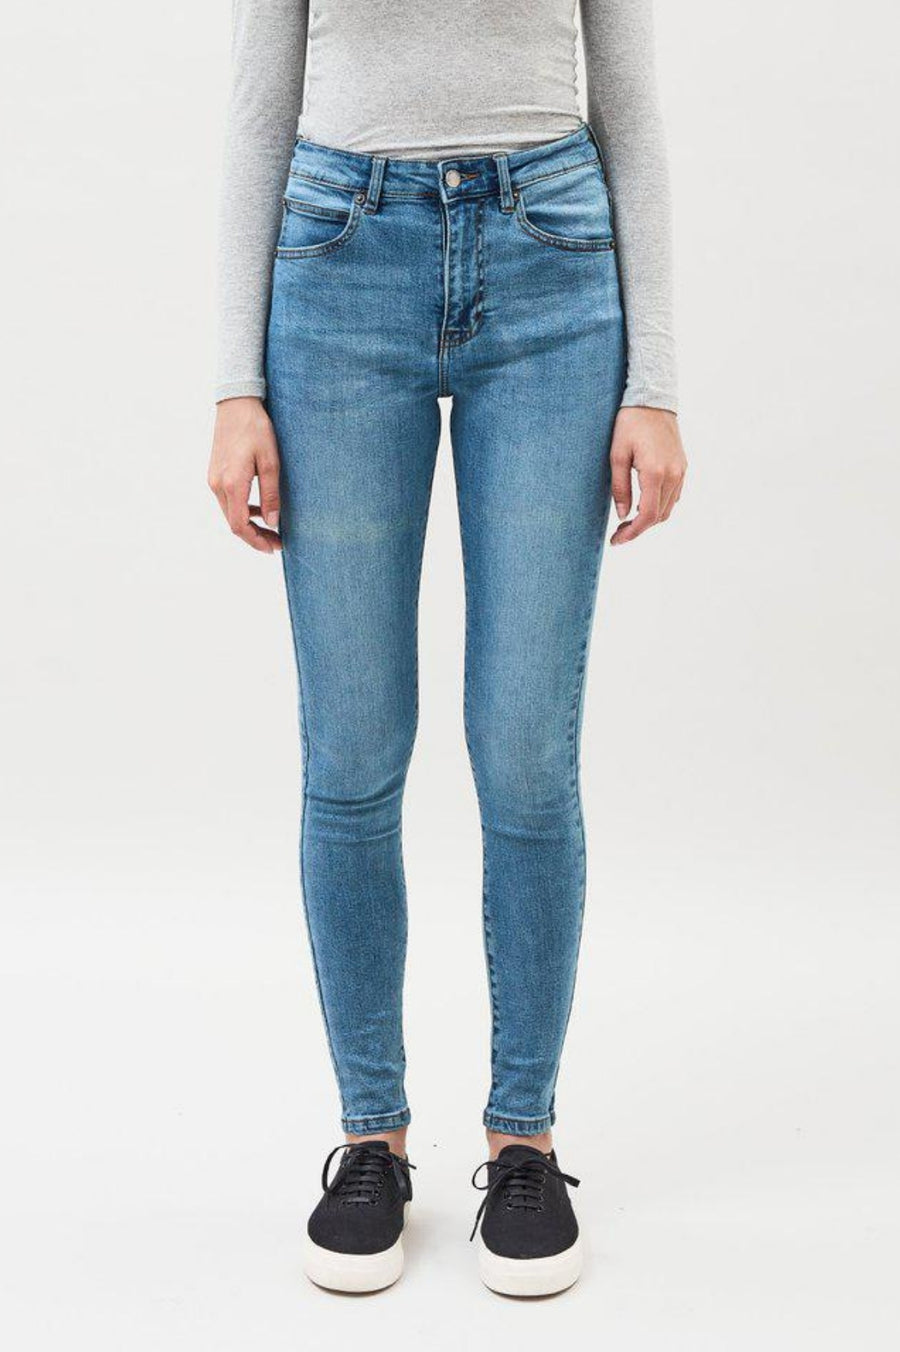 Erin Jeans - Yonder Blue Wash - Dr Denim Jeans - Australia & NZ